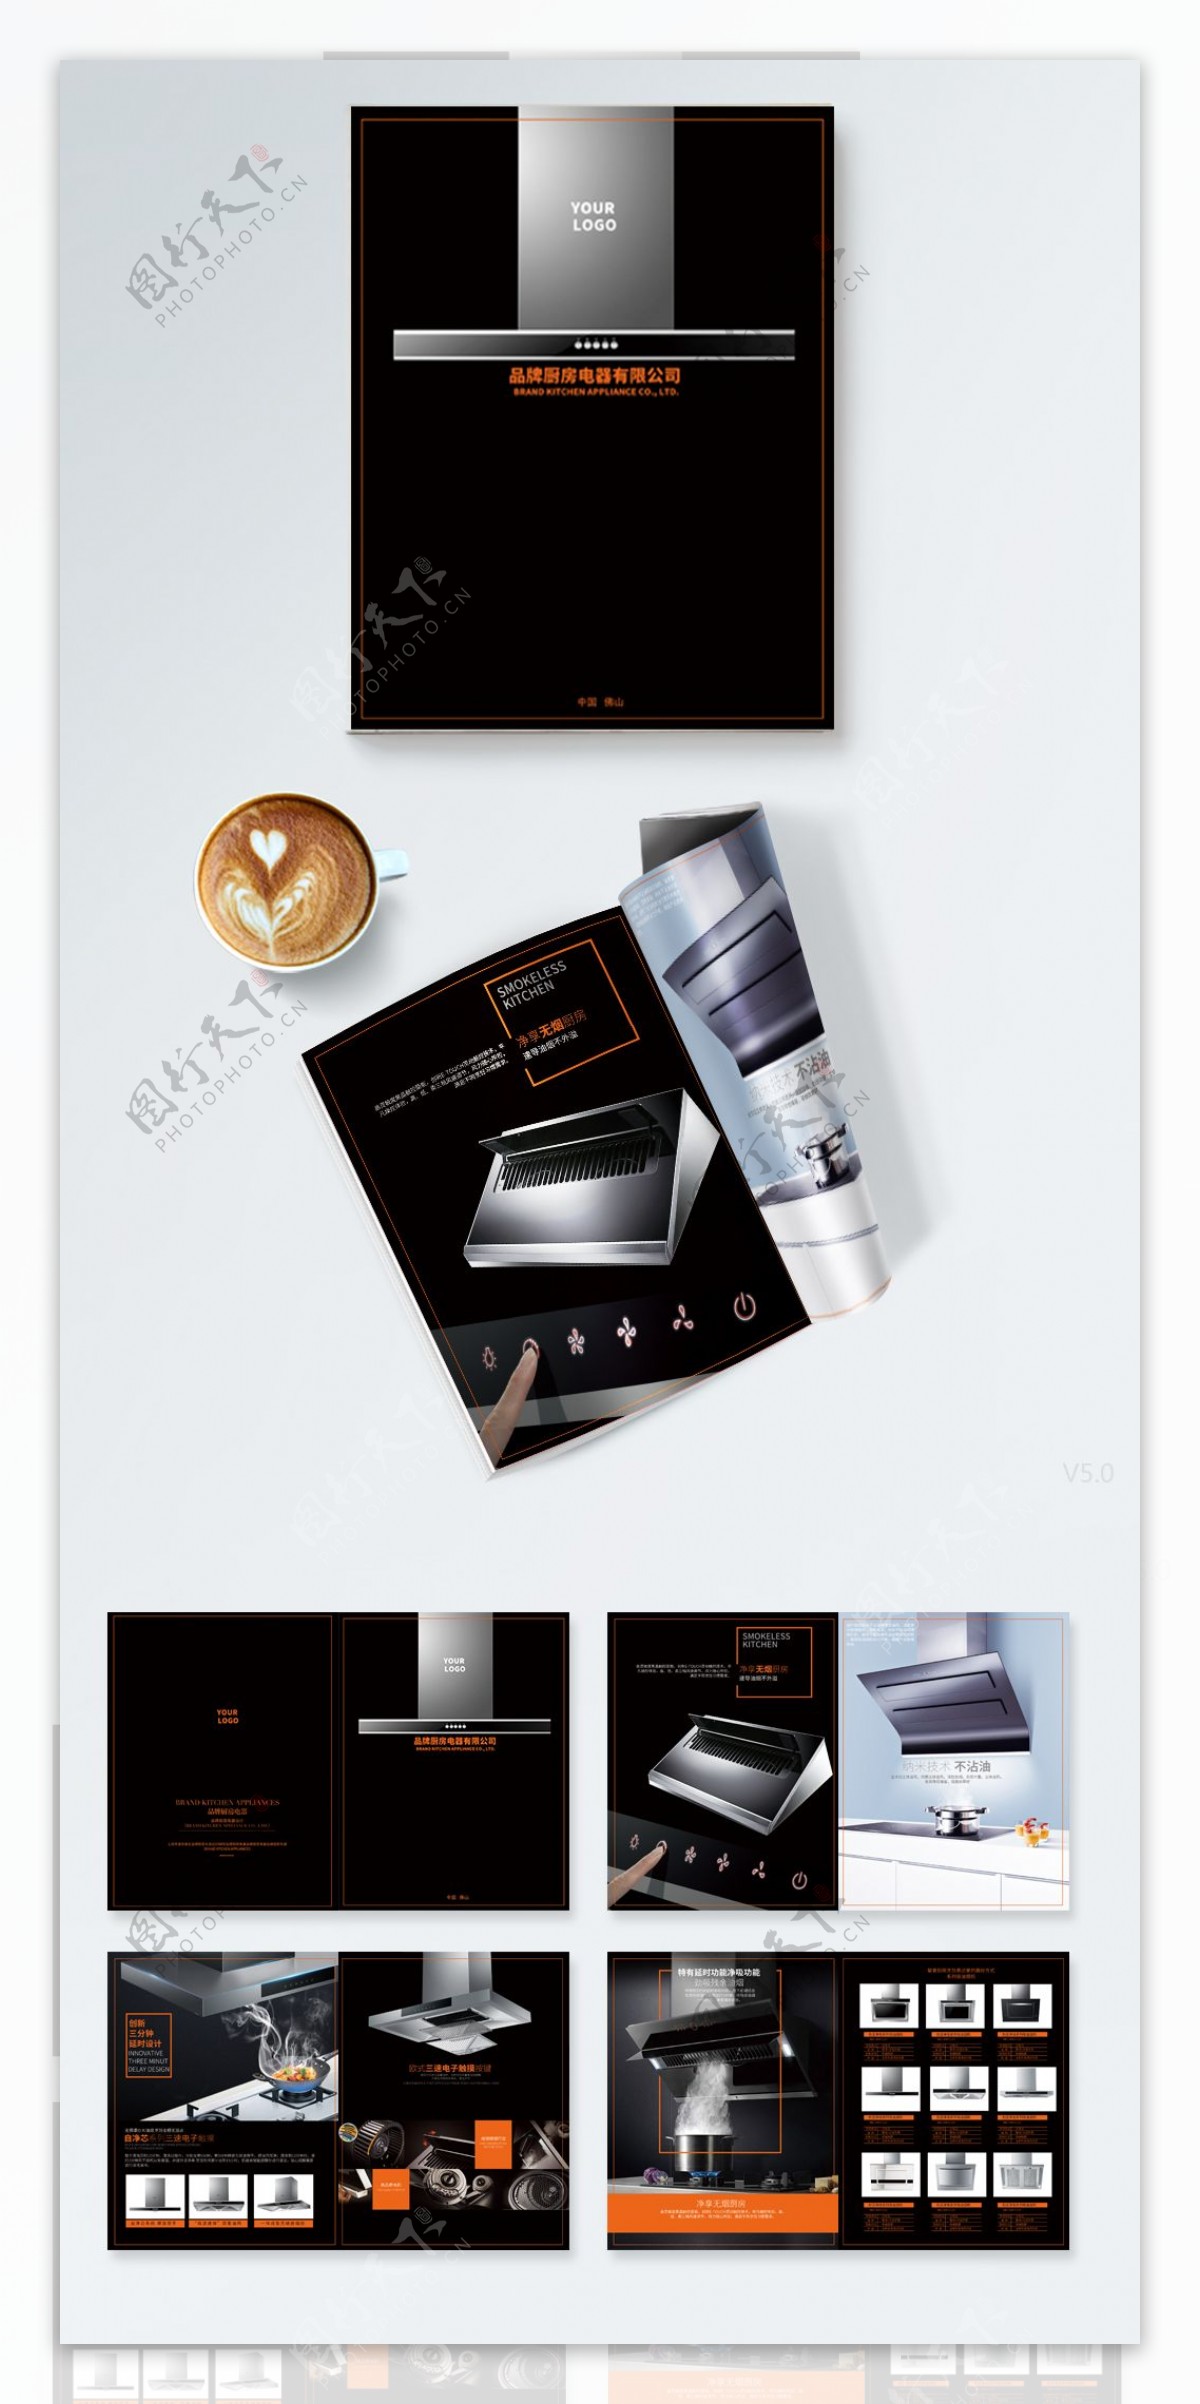 黑色橘色厨房电器油烟机画册设计